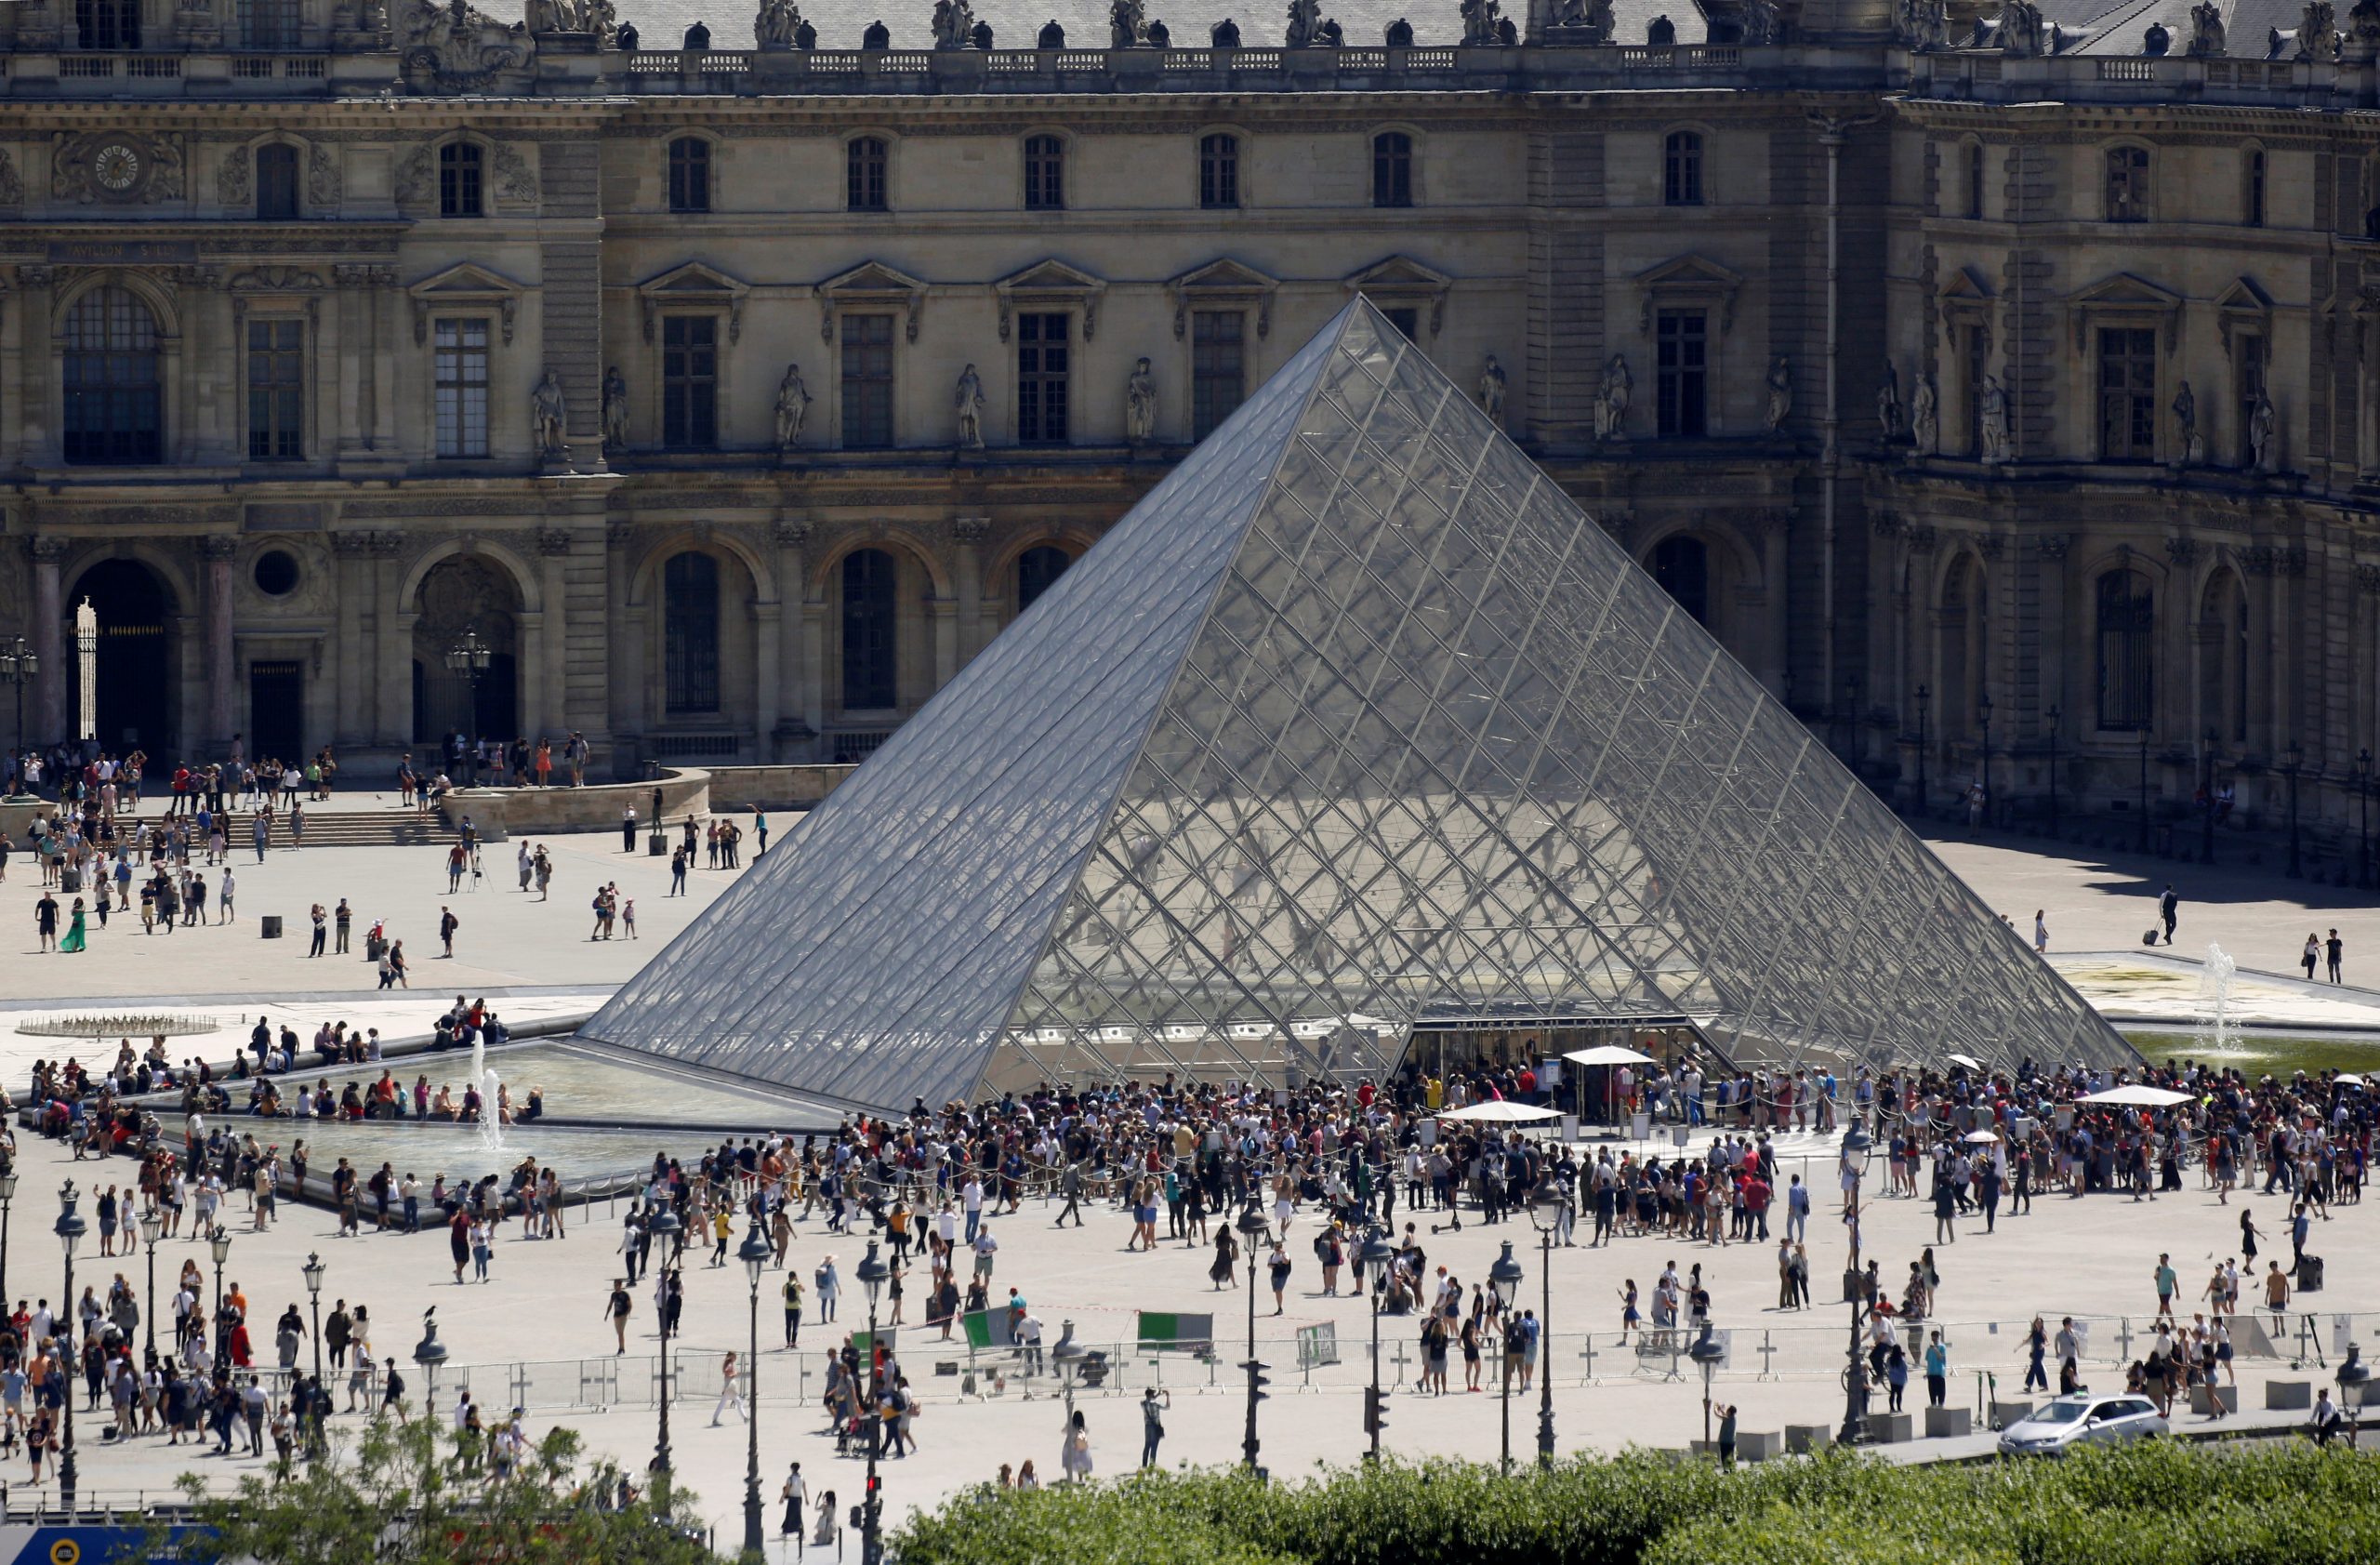 Como precaución frente al coronavirus, Museo de Louvre cerró sus puertas